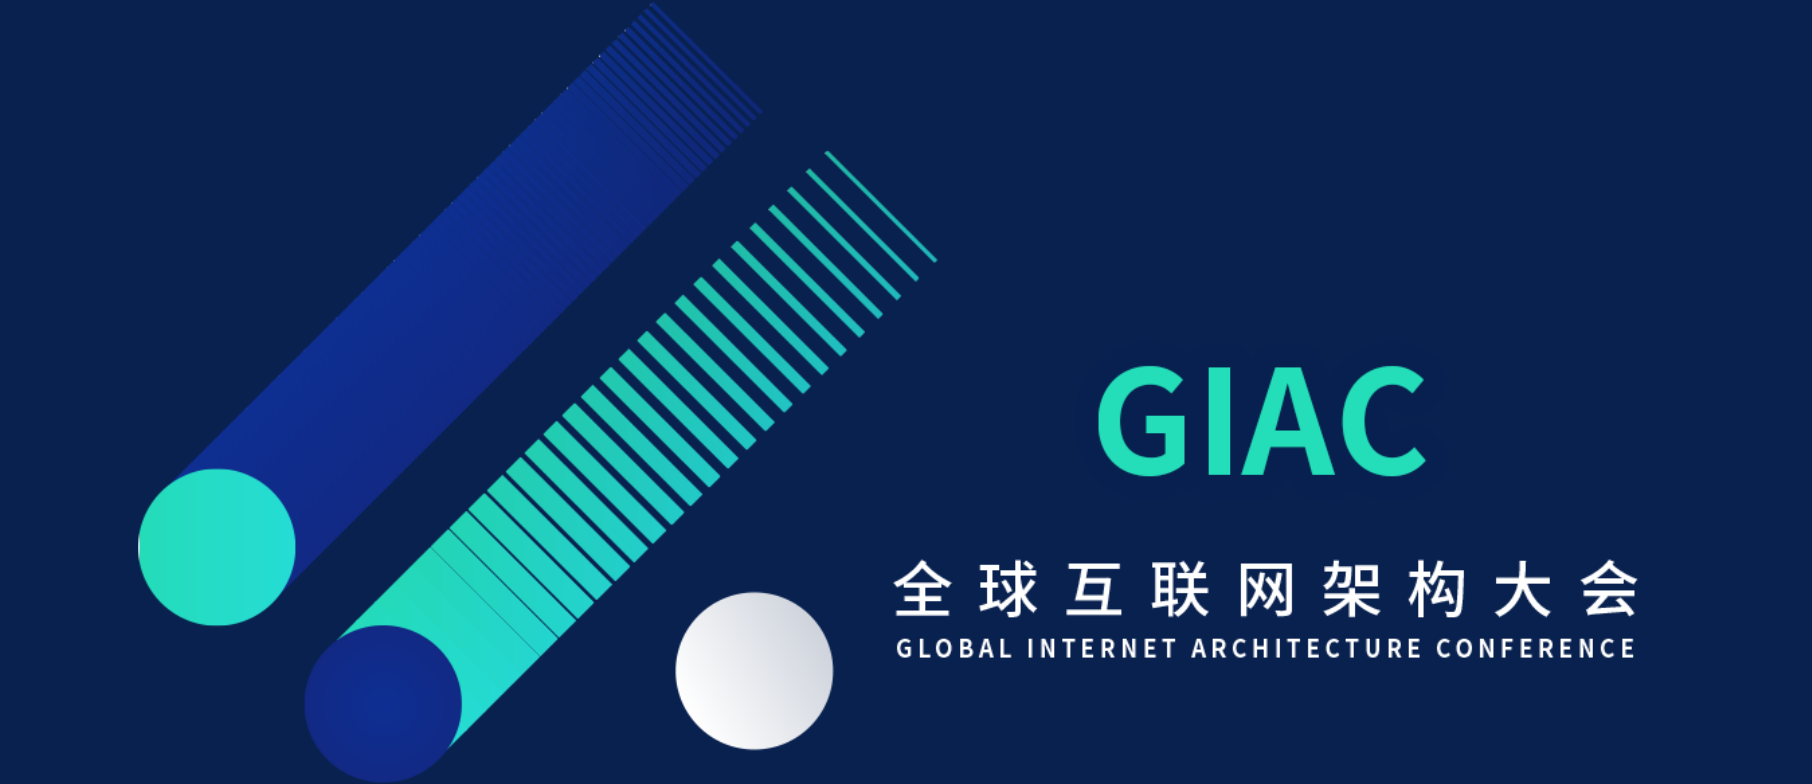 上海 GIAC 全球互联网架构大会